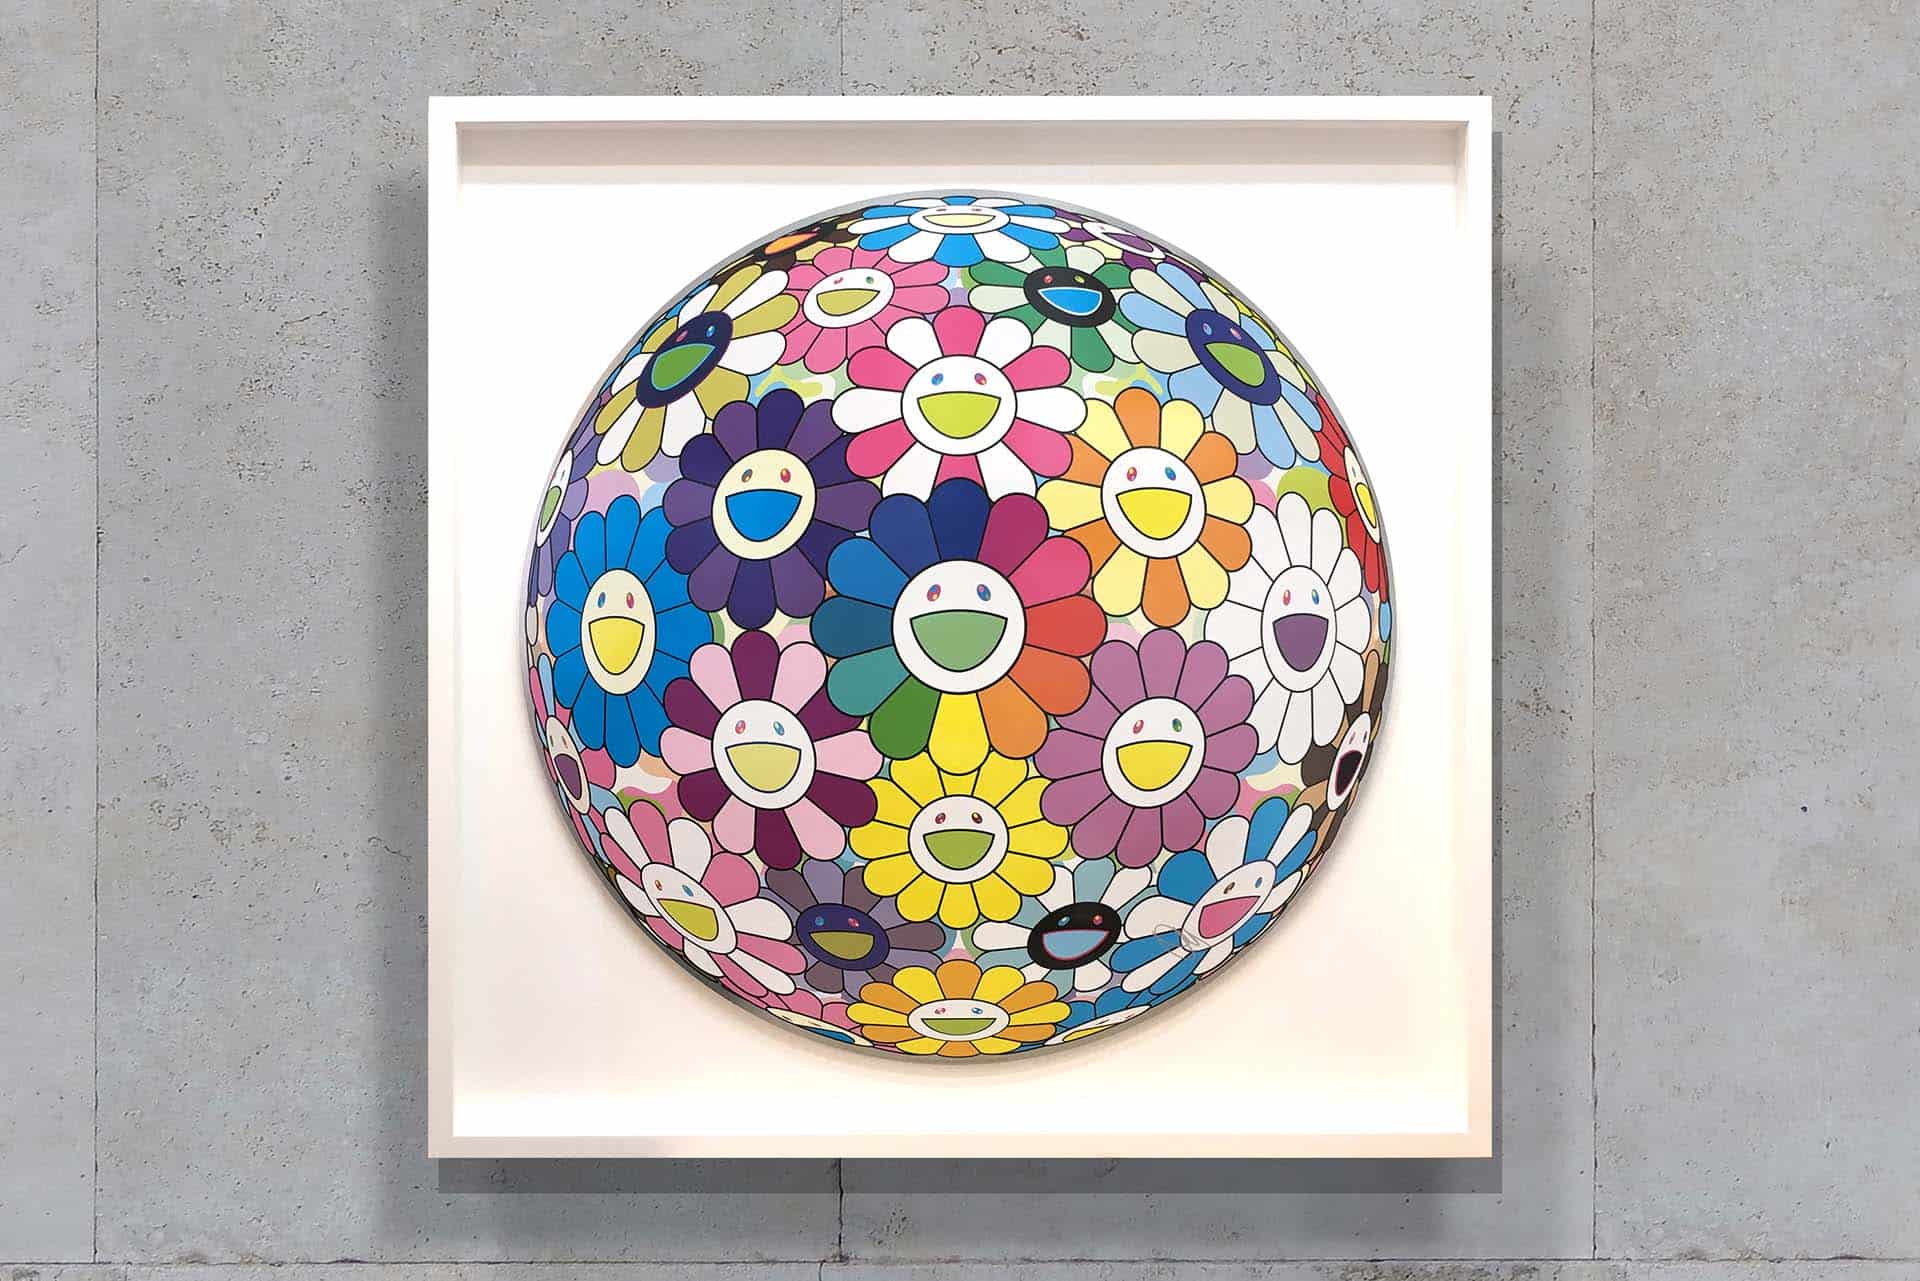 Lee Wah Framing Multicolour Flower Ball by Takashi Murakami framed in white box frame